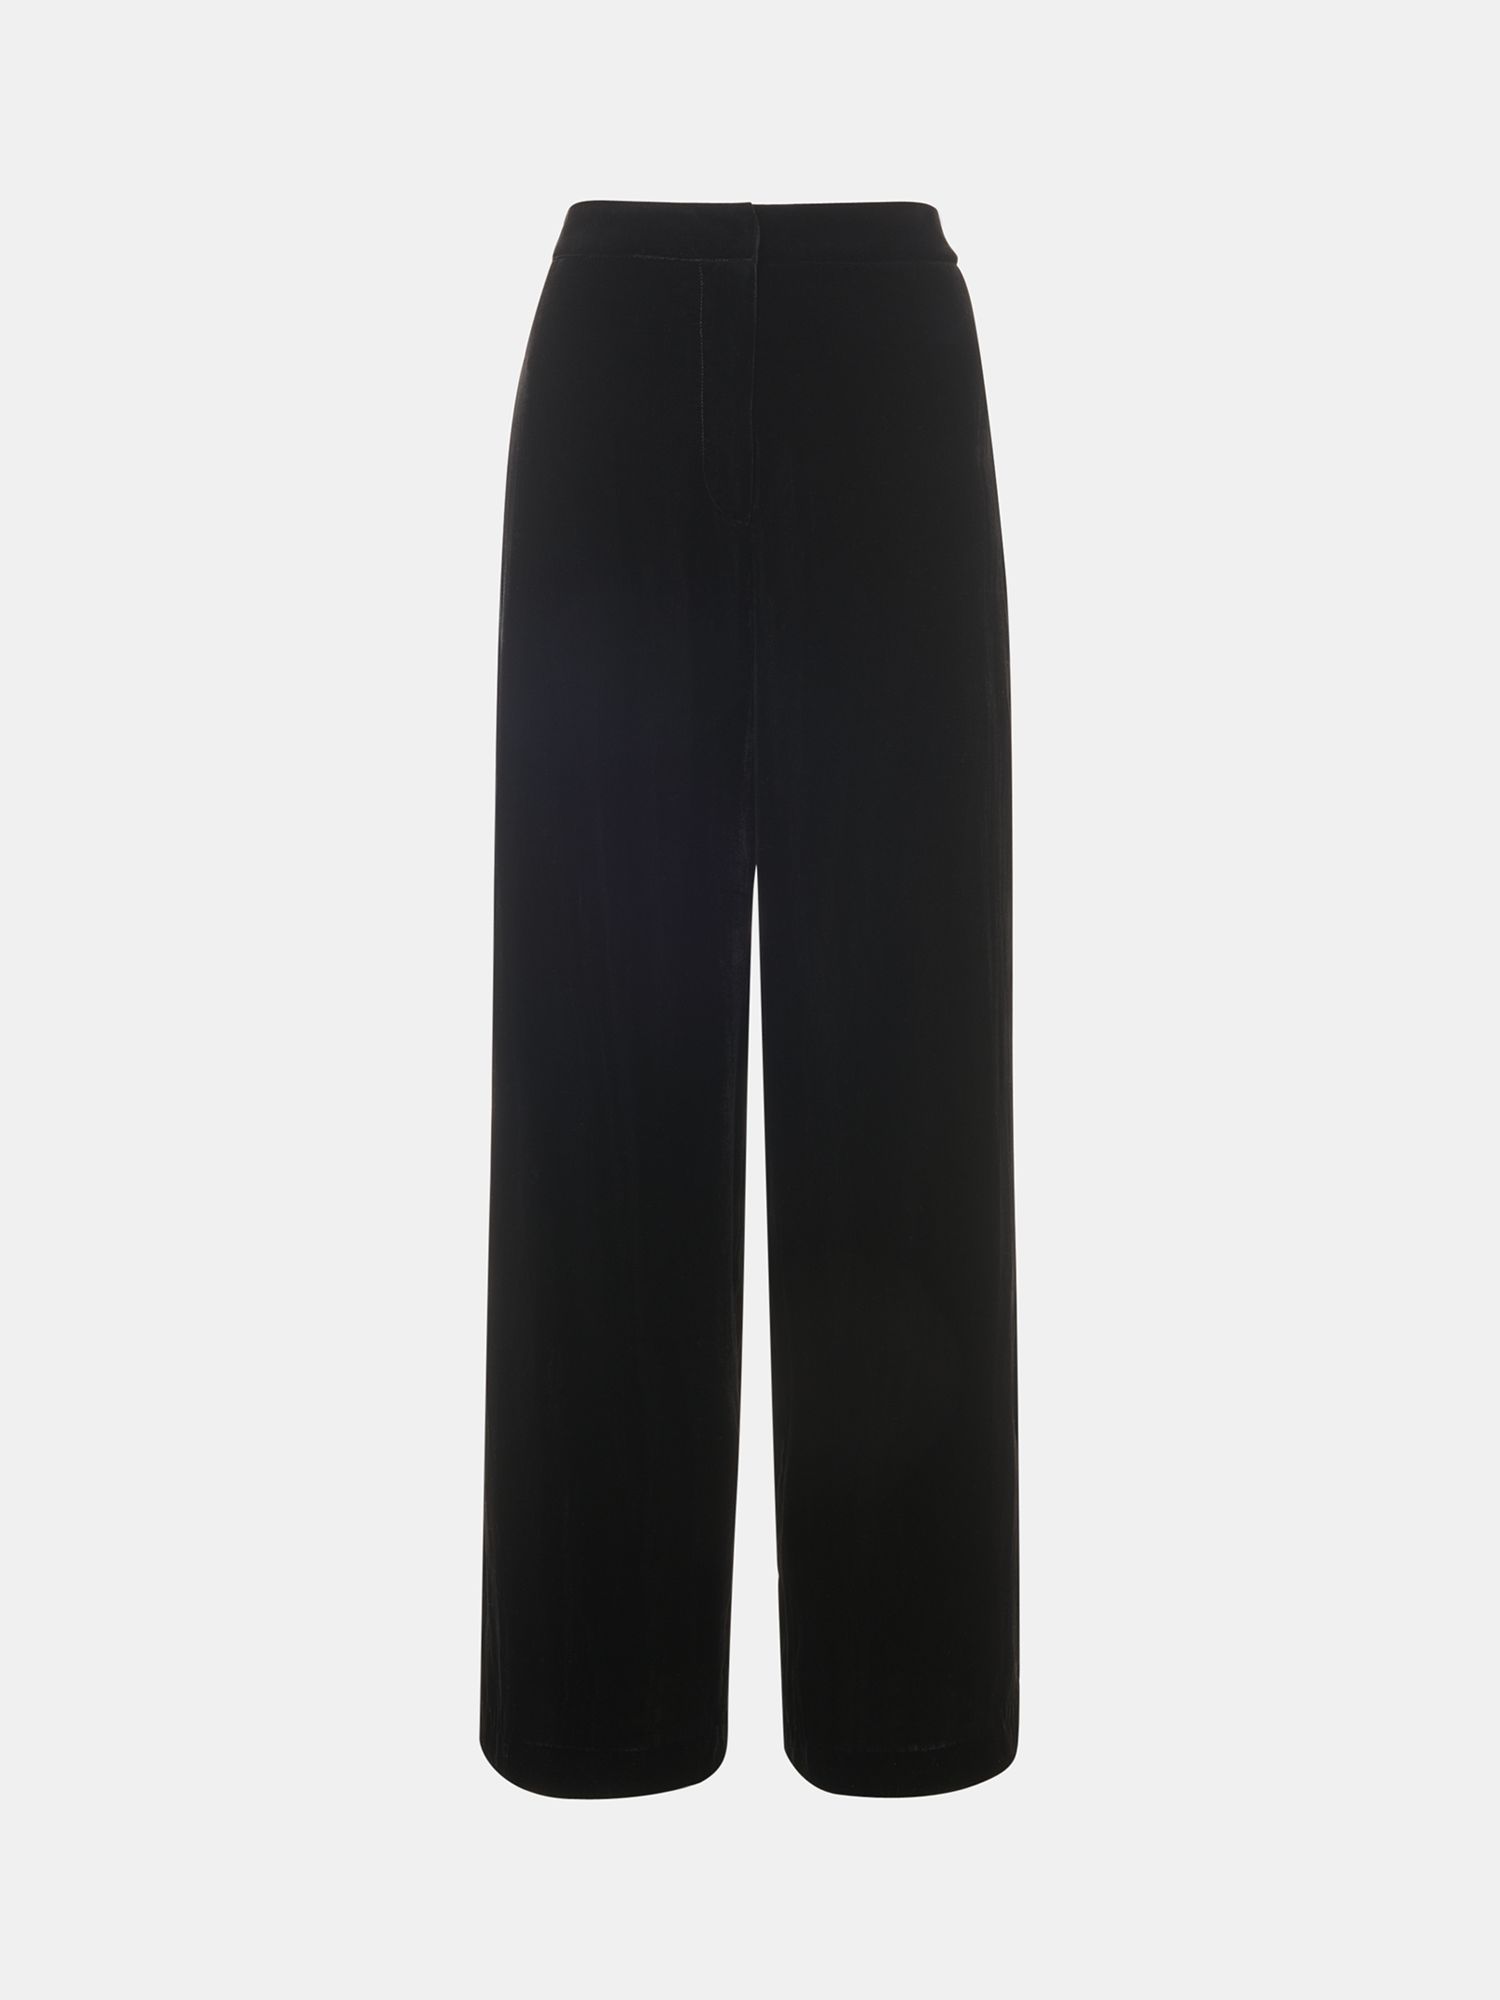 Whistles Petite Full Length Velvet Trousers, Black at John Lewis & Partners